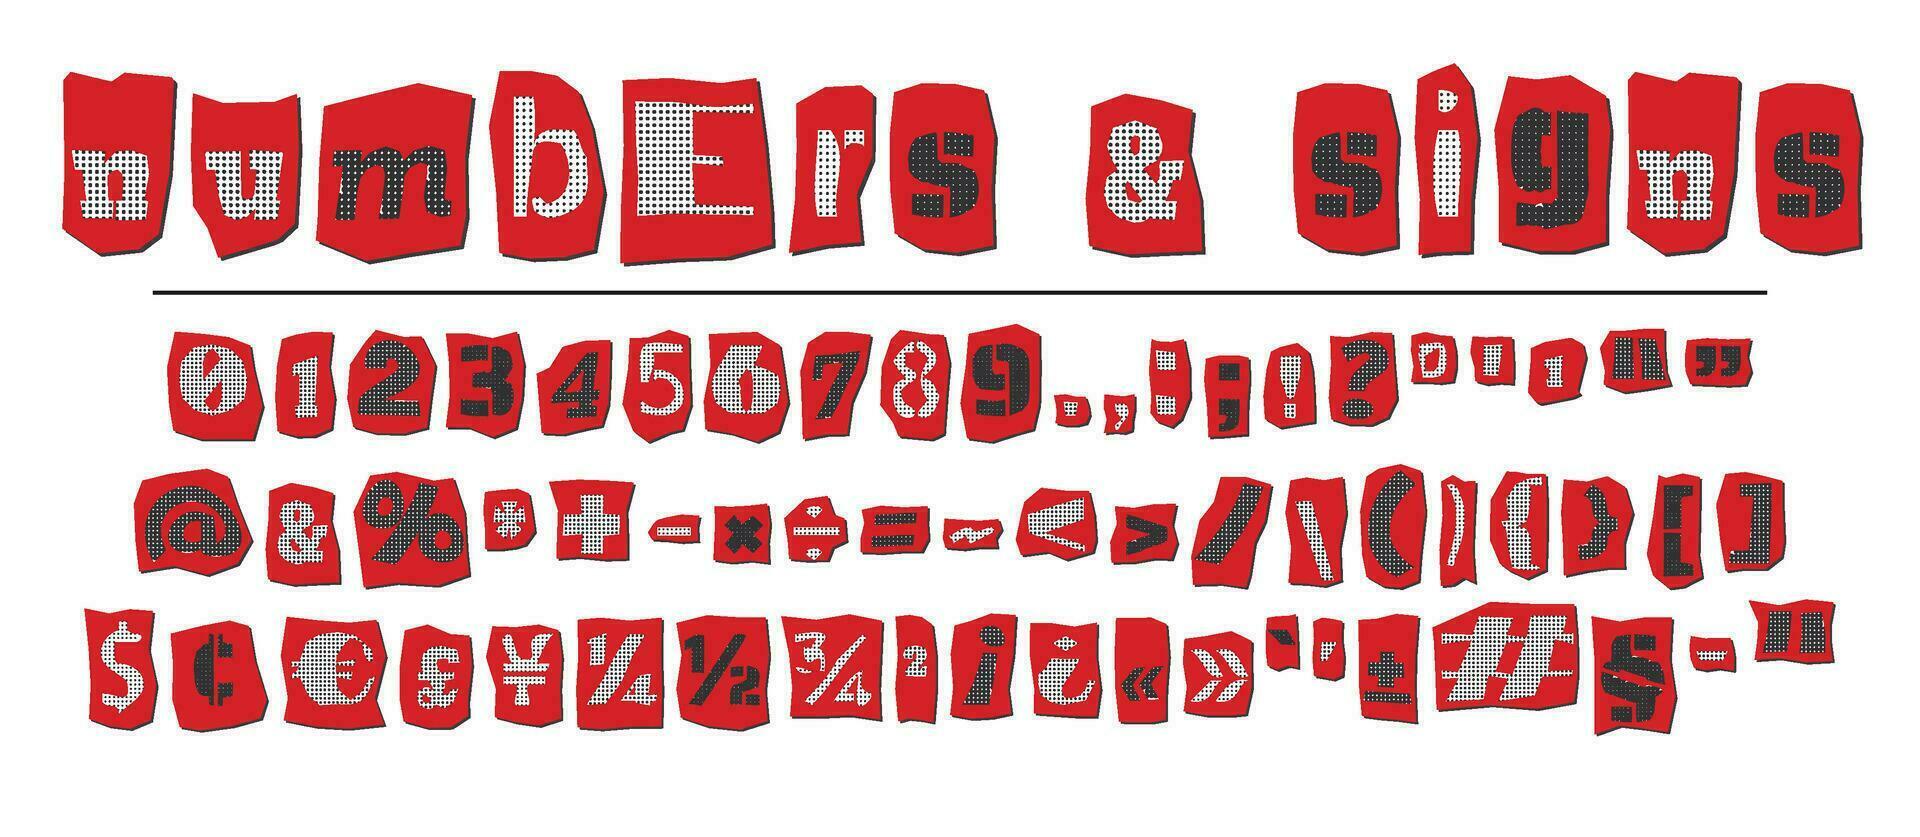 rescate trama de semitonos collage estilo letras números y puntuación marcas cortar desde periódicos y revistas Clásico a B C recopilación. rojo, negro y blanco alfabeto tipografía vector ilustración